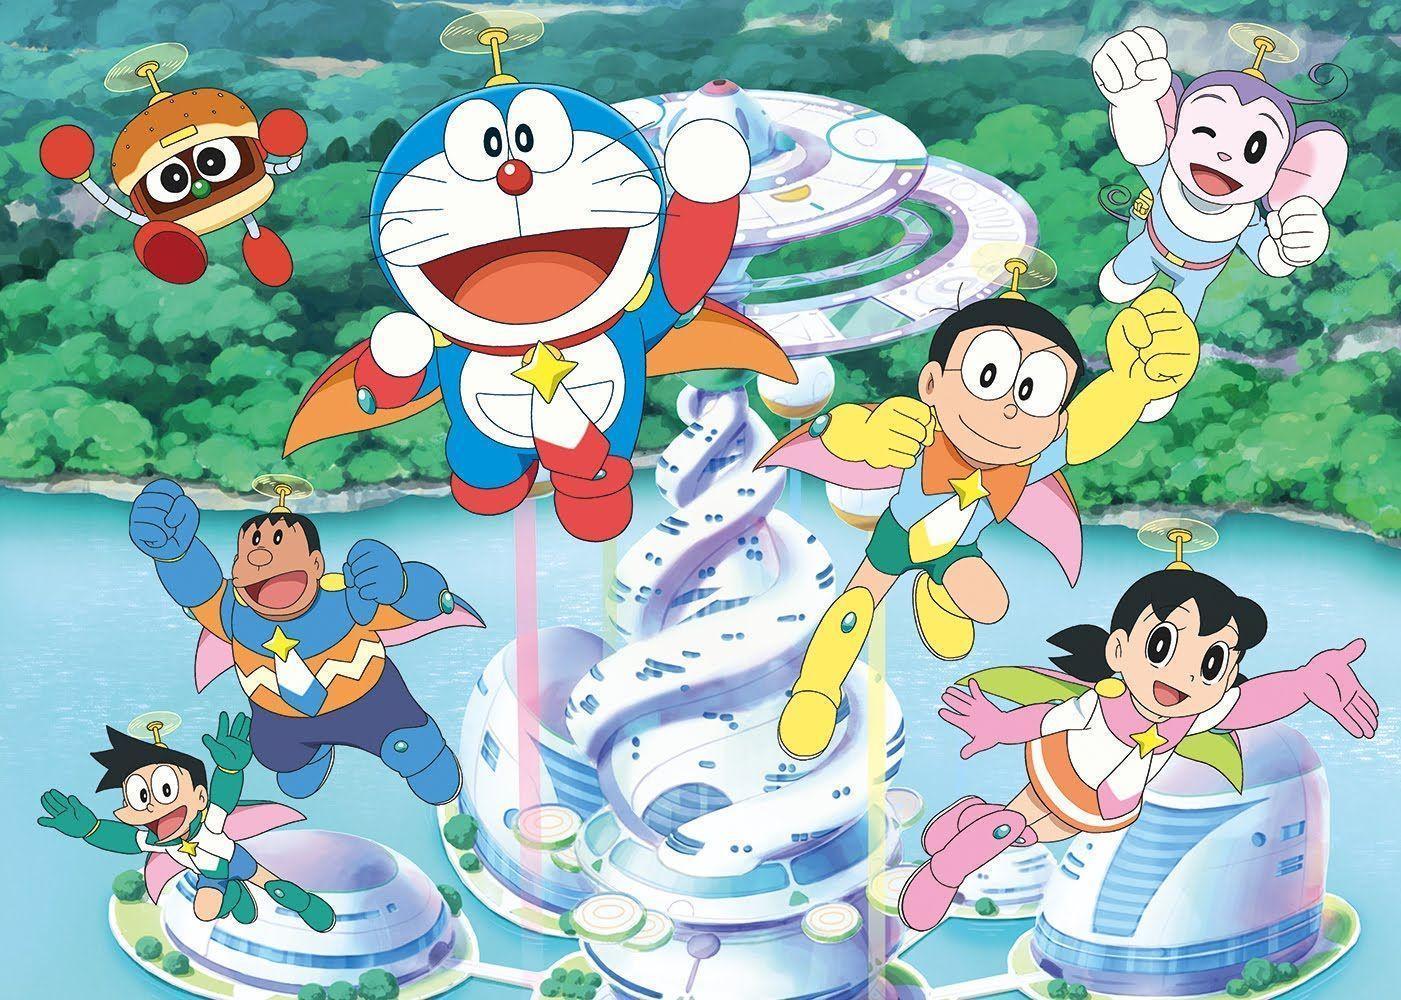 96+] Doraemon And Friends Wallpaper 2017 - WallpaperSafari